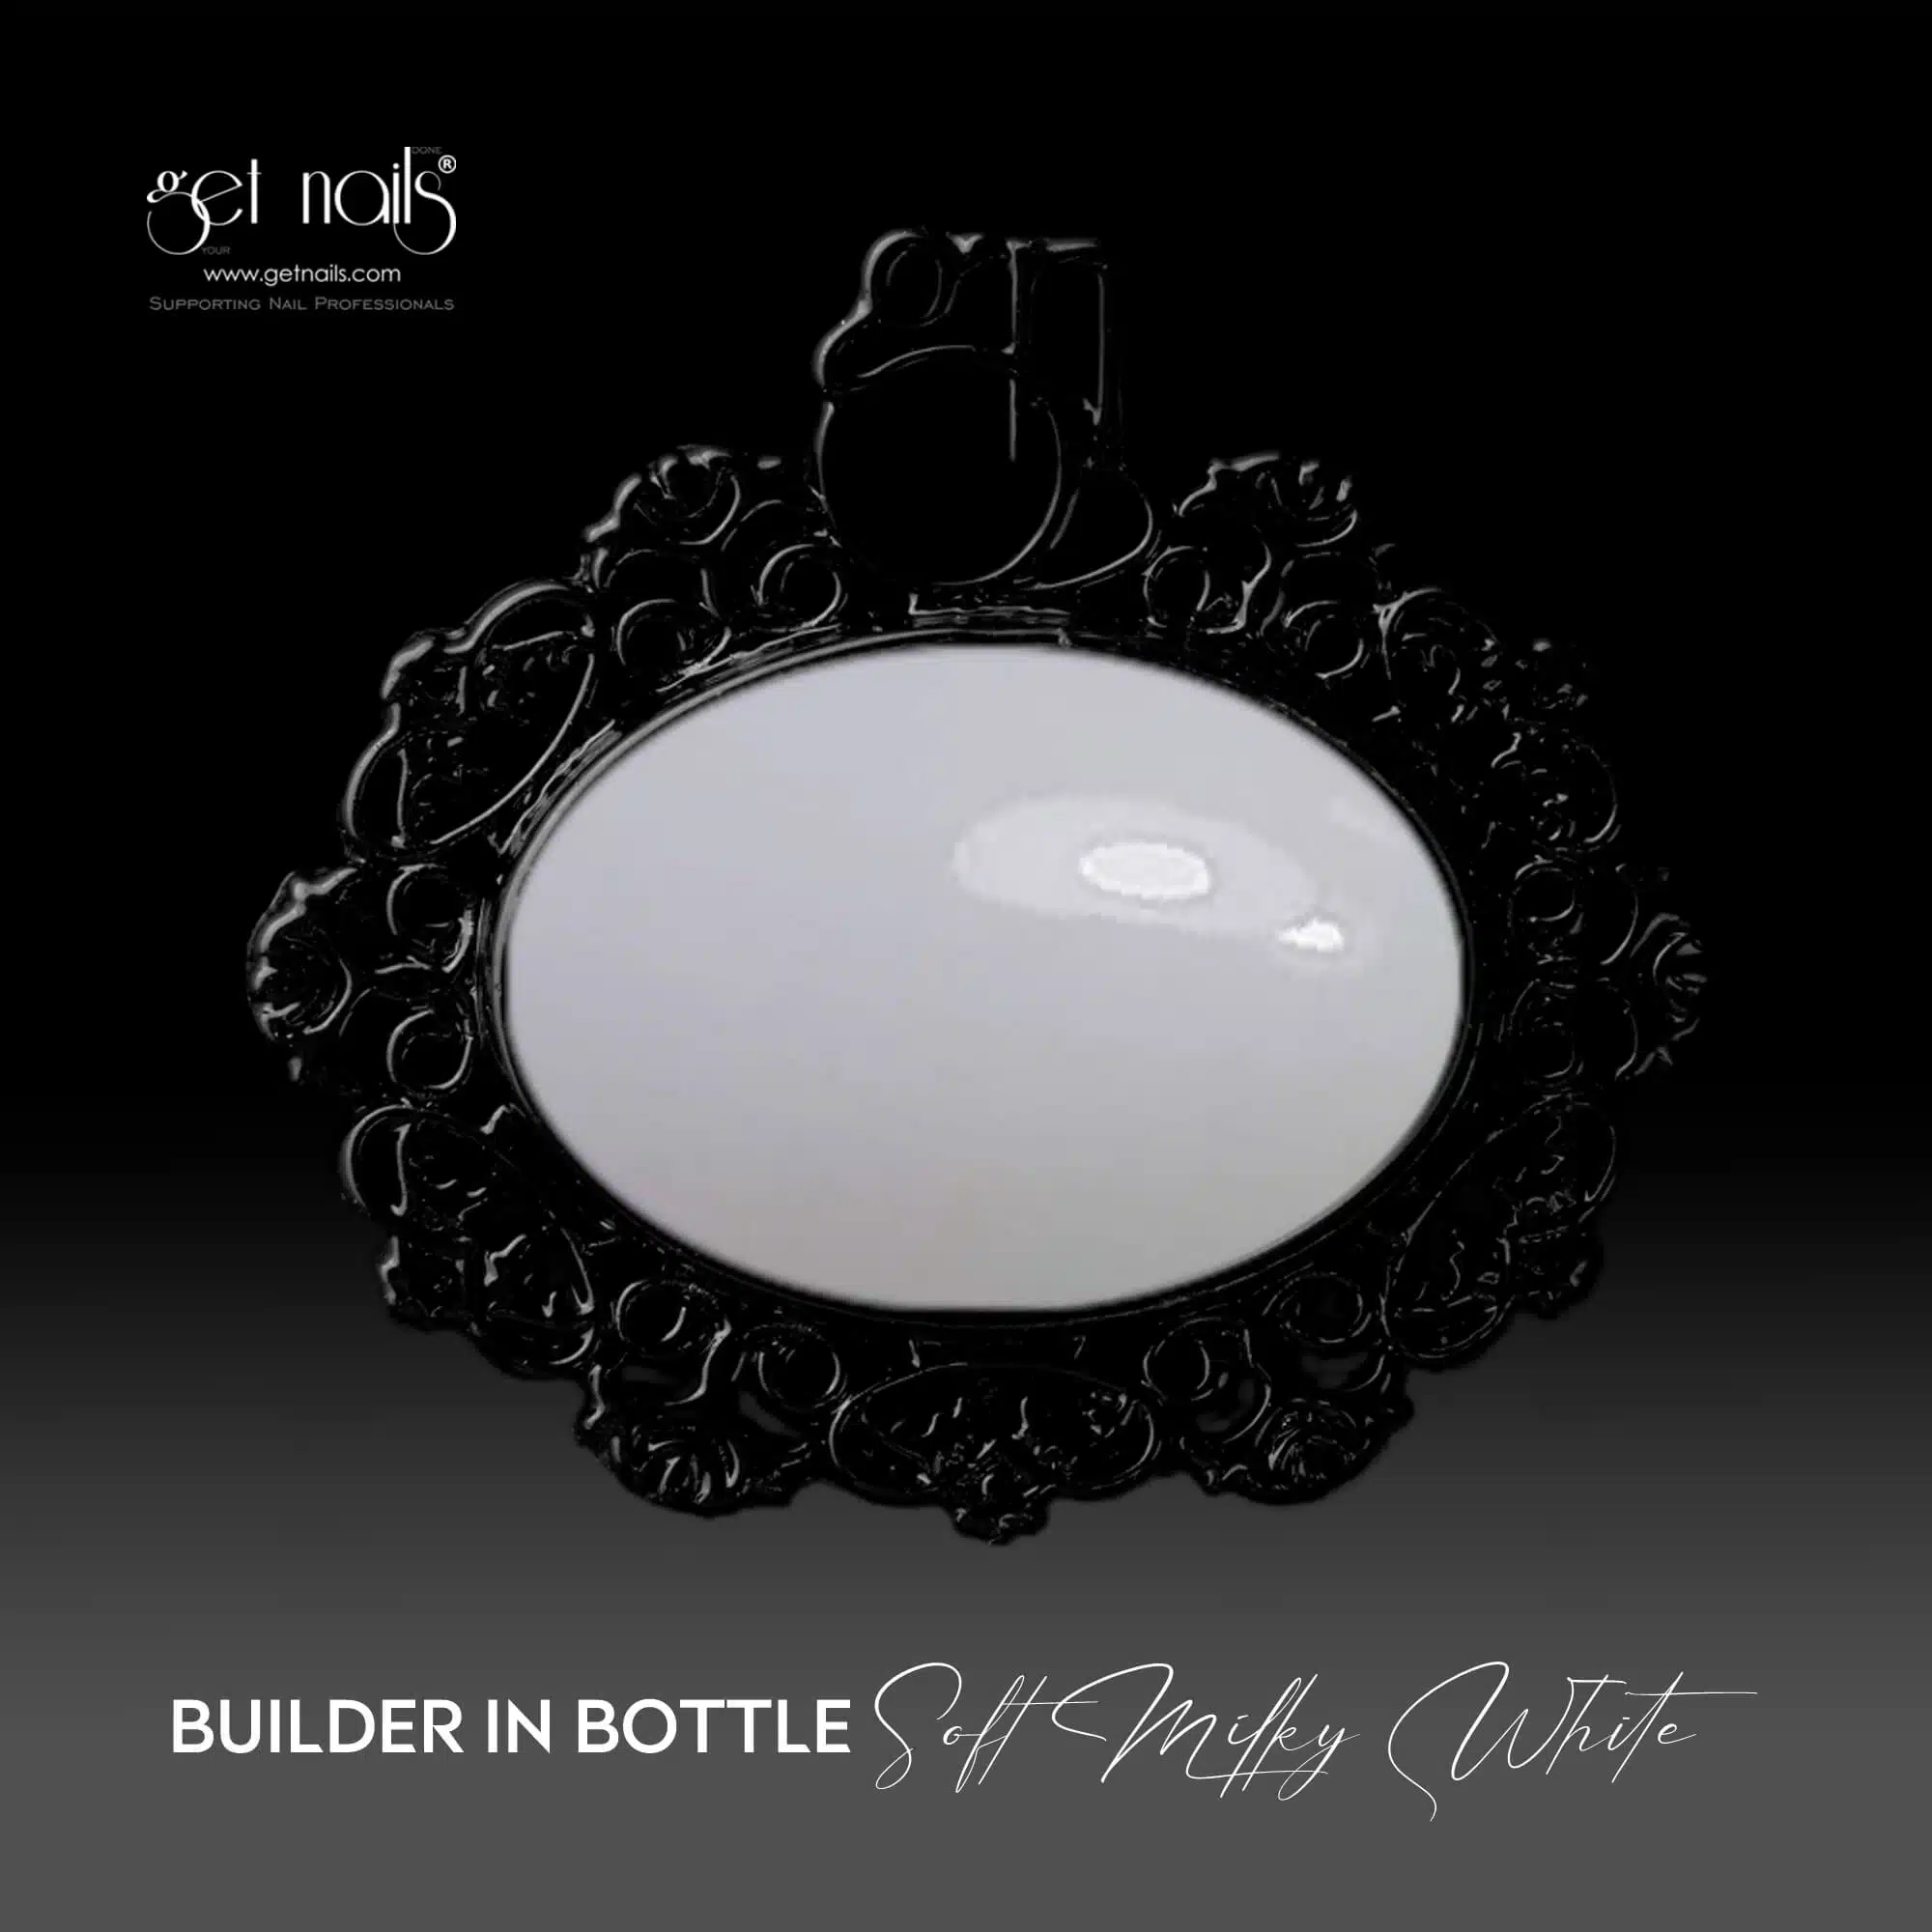 Get Nails Austria - Builder в бутылке Мягкий молочно-белый 15г